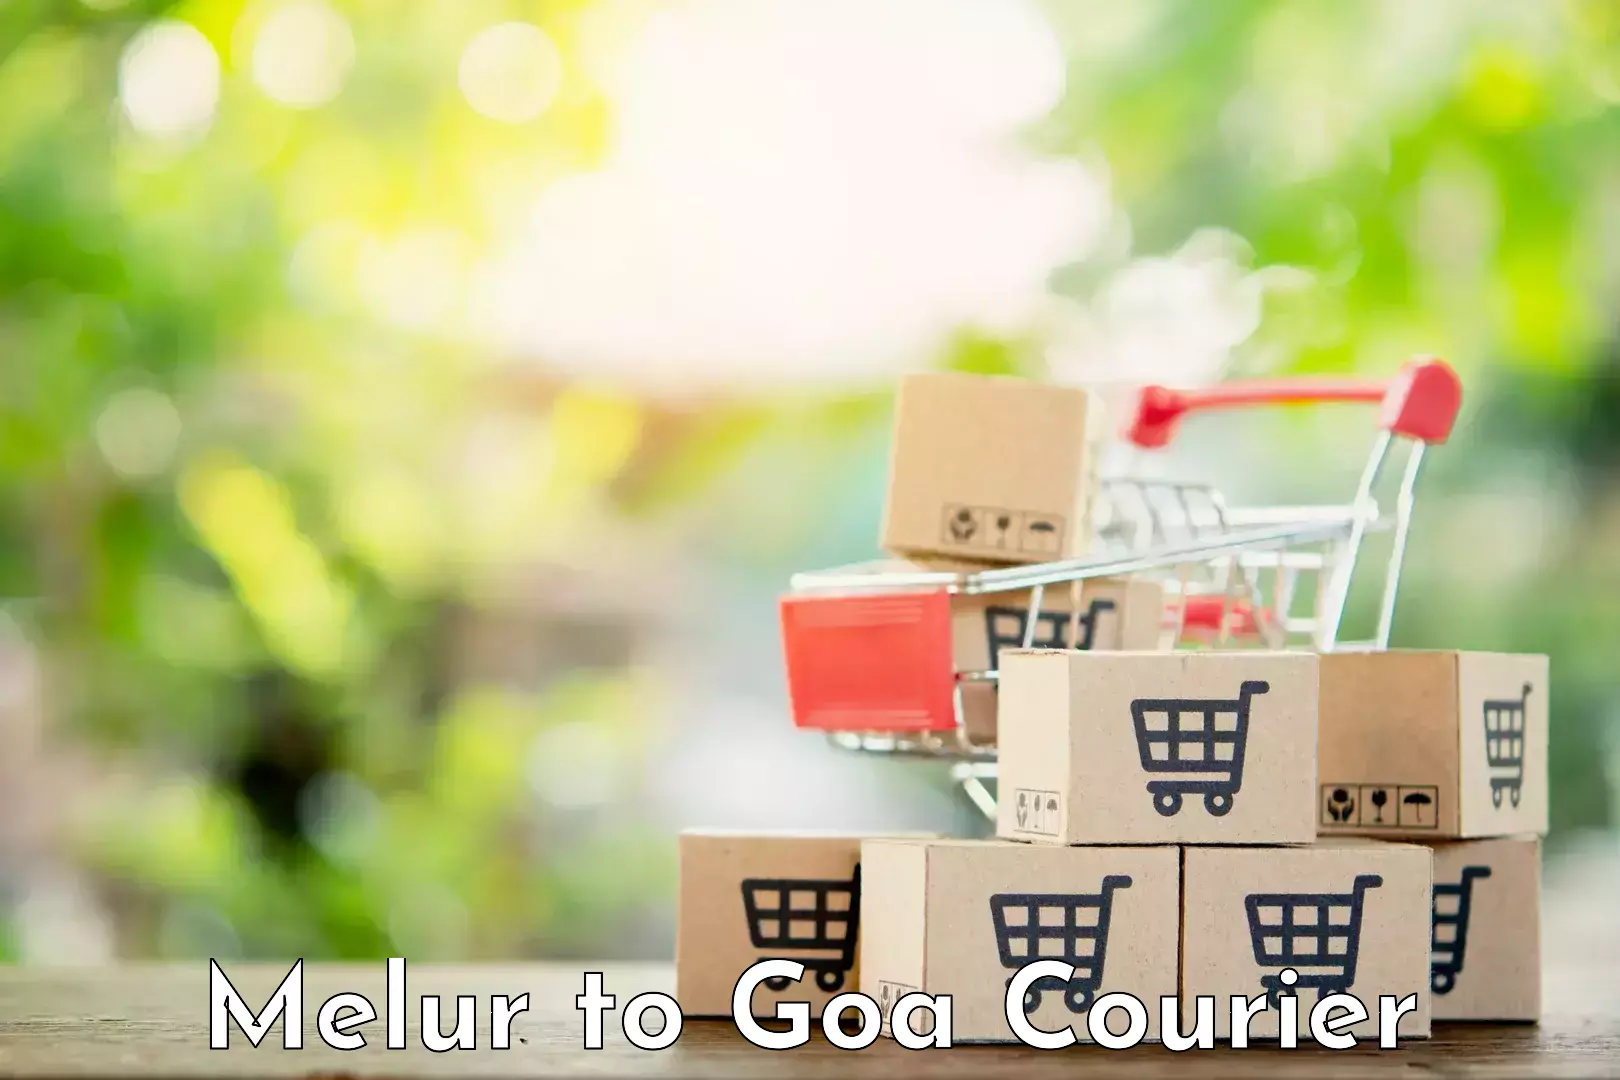 Quality courier partnerships Melur to Mormugao Port